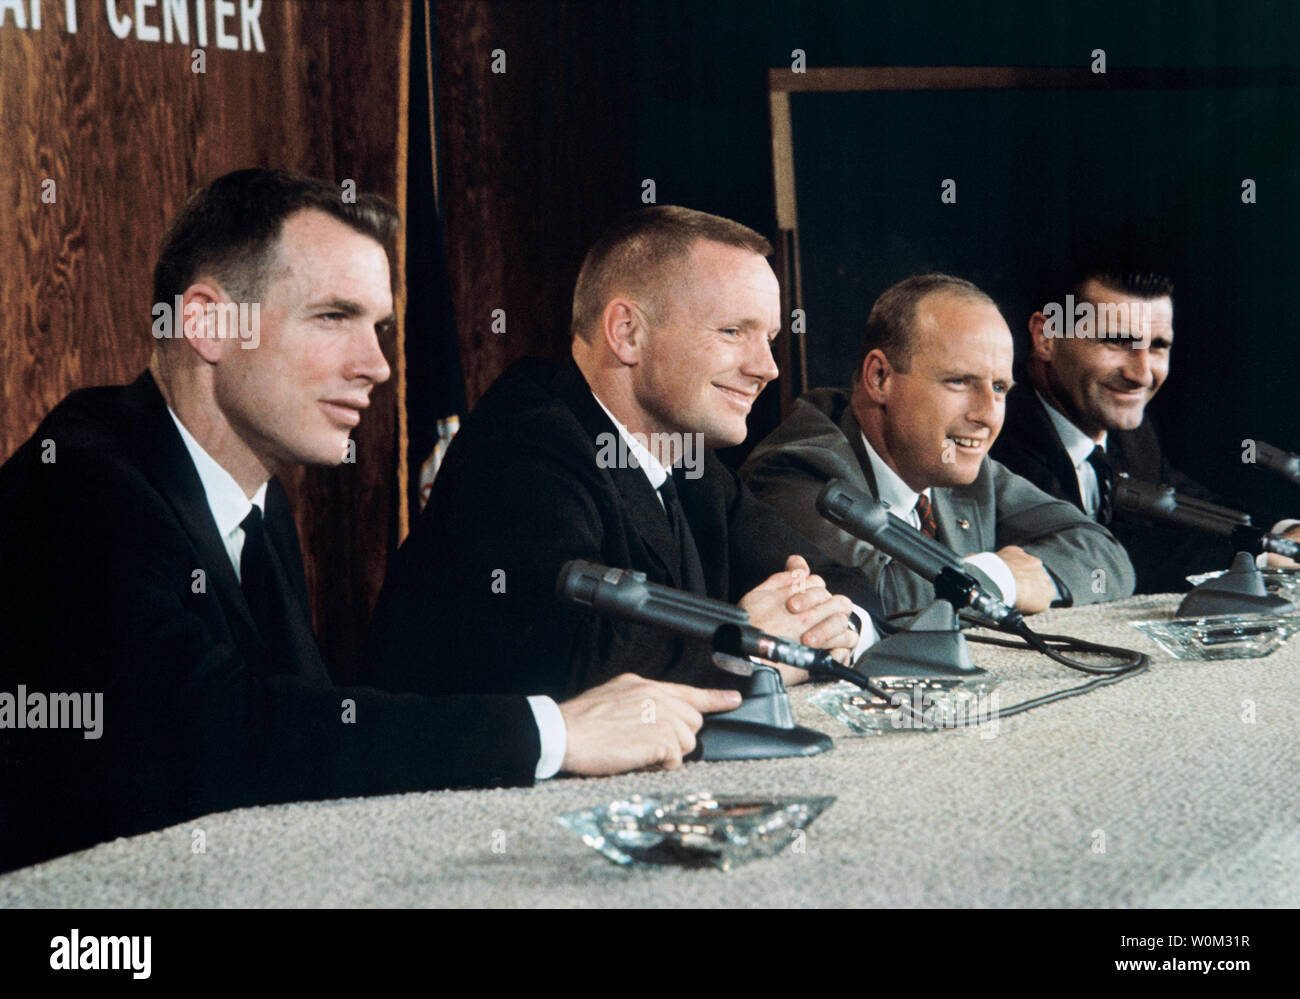 Gemini 8 Prime und Backup Mannschaften während eines Februar 26, 1966, Pressekonferenz. Zu recht sind Astronauten David Scott, Prime crew Pilot; Neil Armstrong, Prime crew Befehl Pilot; Pete Conrad, Backup crew Befehl Pilot; und Richard Gordon jr., Backup crew pilot Links. März 16, 2016 markiert den 50. Jahrestag der NASA Gemini 8 Mission, das sechste bemannte Raumfahrt während Projekt Gemini Programms der Vereinigten Staaten durchgeführt. Das Hauptziel der Mission, dem erfolgreichen Andocken von zwei Satelliten im Orbit, ein Novum in der Raumfahrt, war ein Erfolg, obwohl die Mannschaft würde eine kritische in - spac Stockfoto